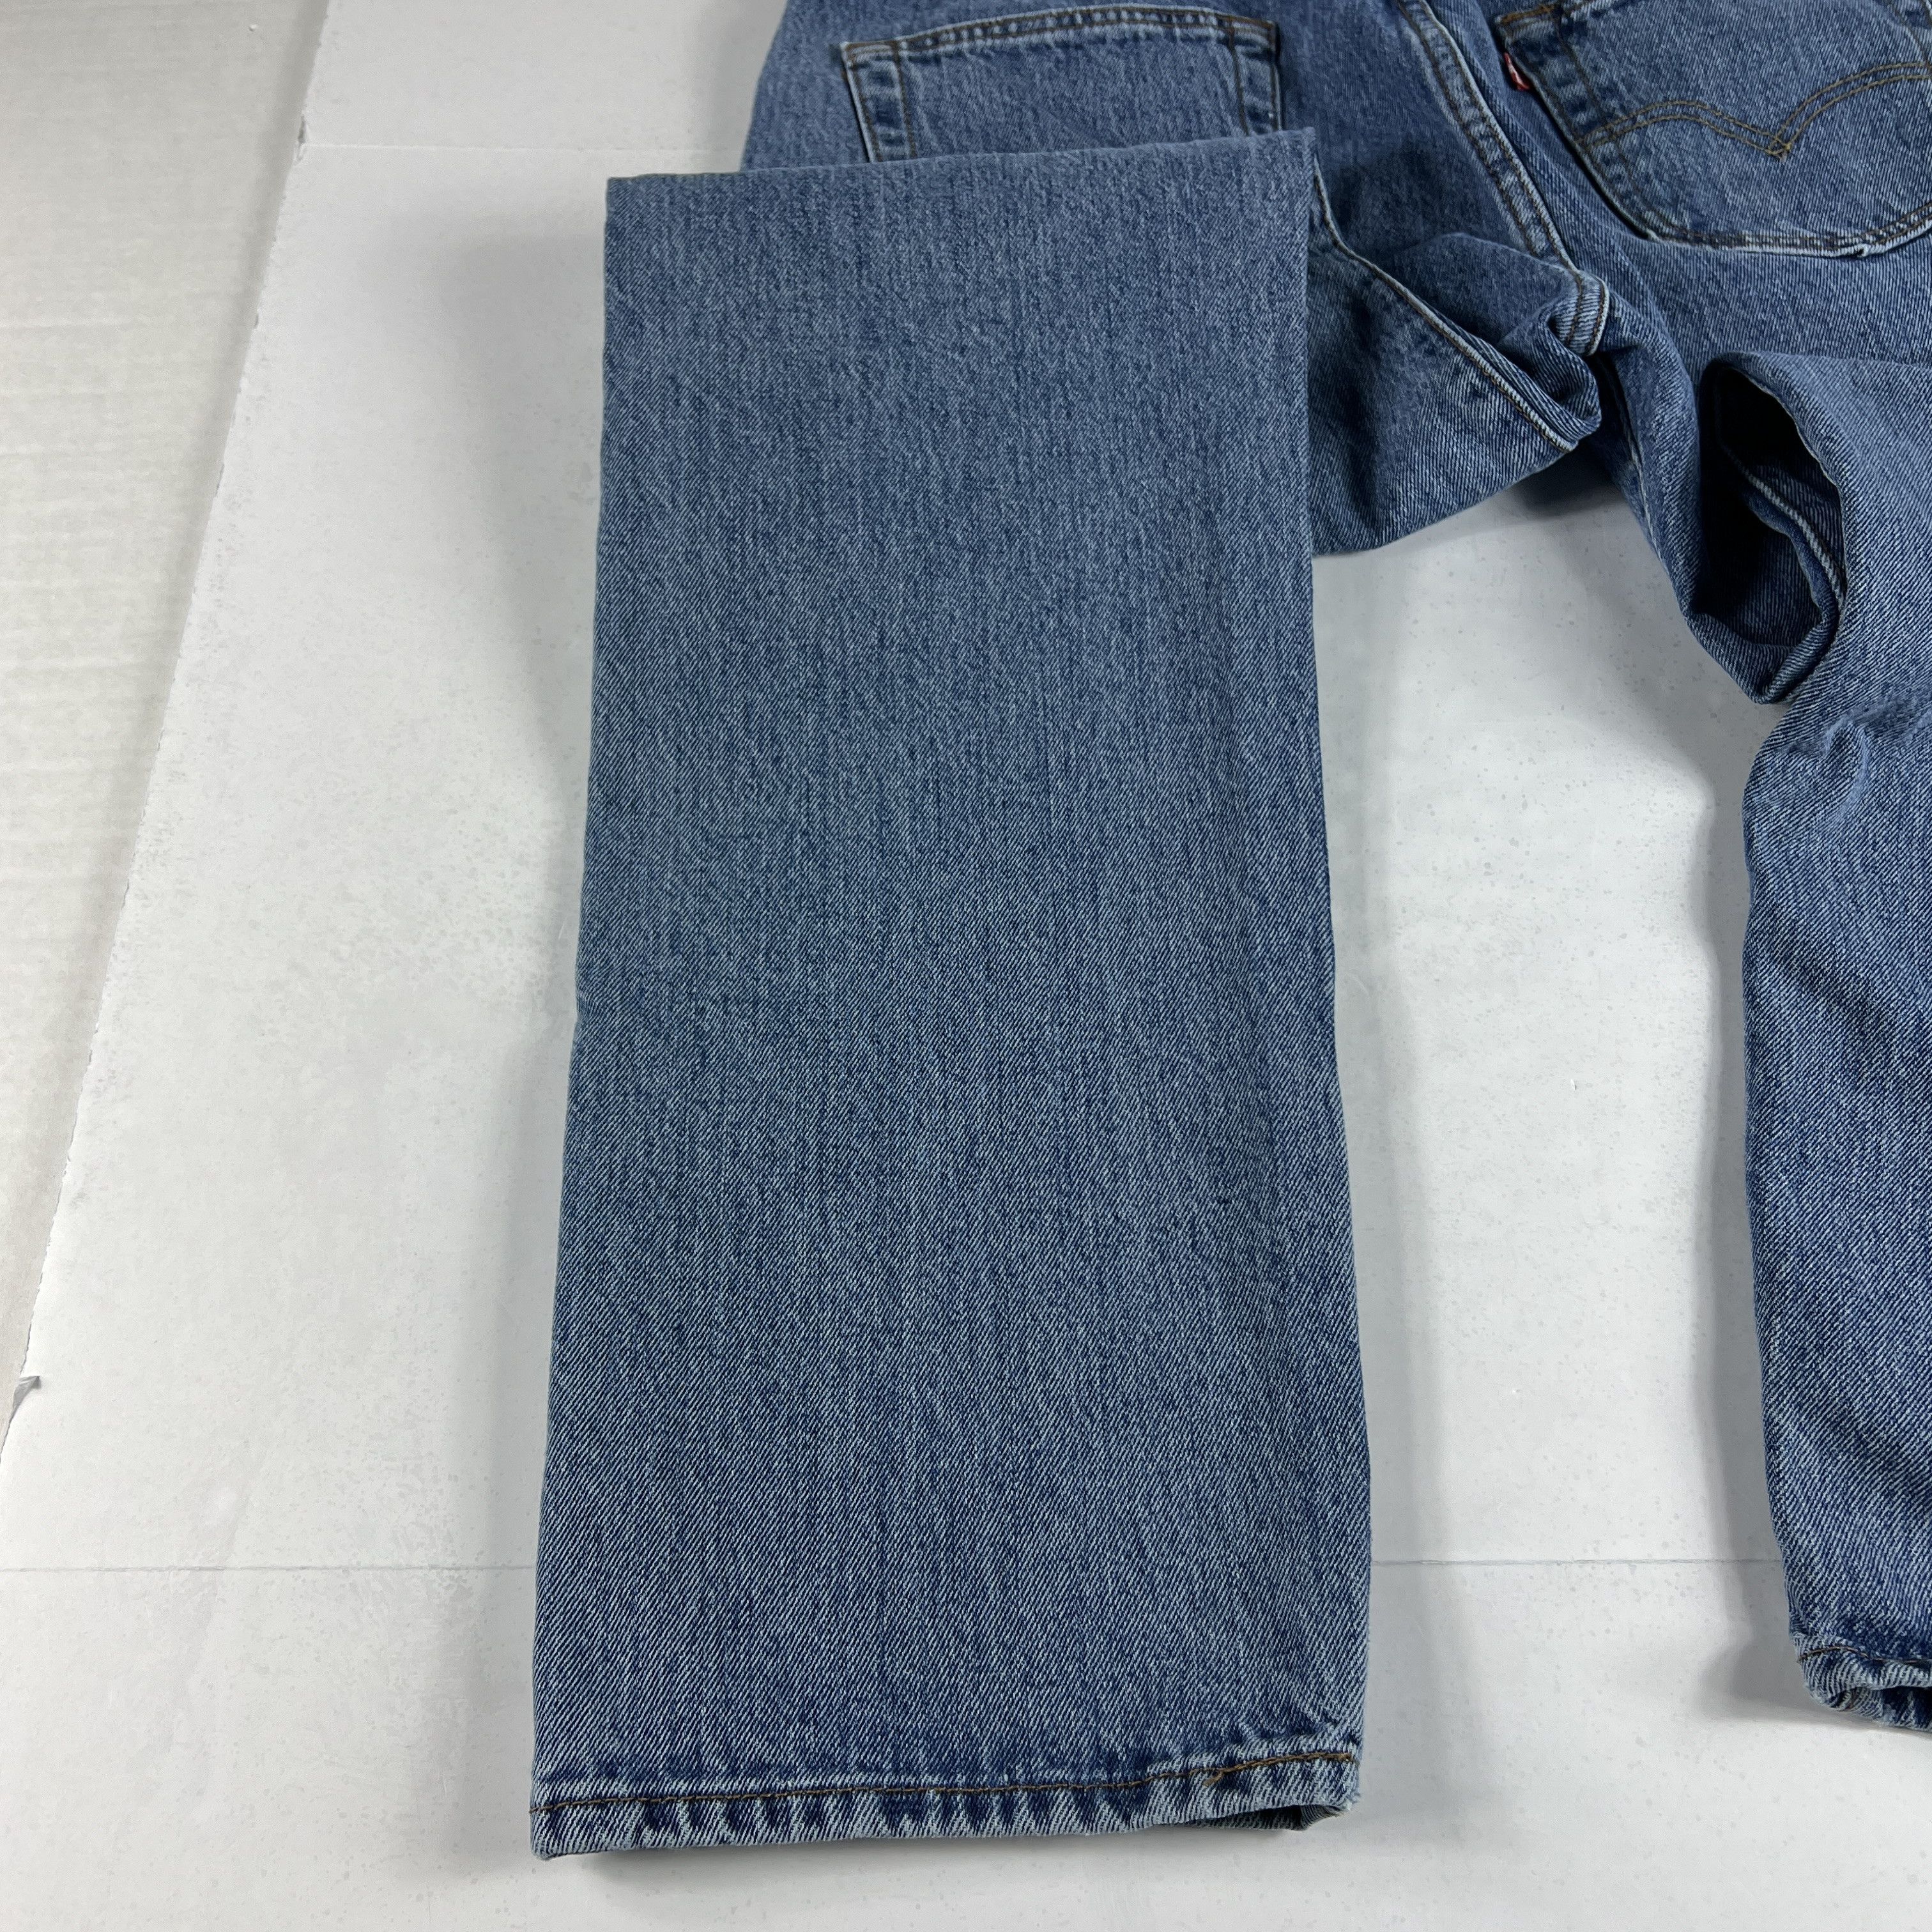 Levi's Levi's Jeans 501 XX Original Straight Blue Cotton Denim Size US 33 - 18 Thumbnail